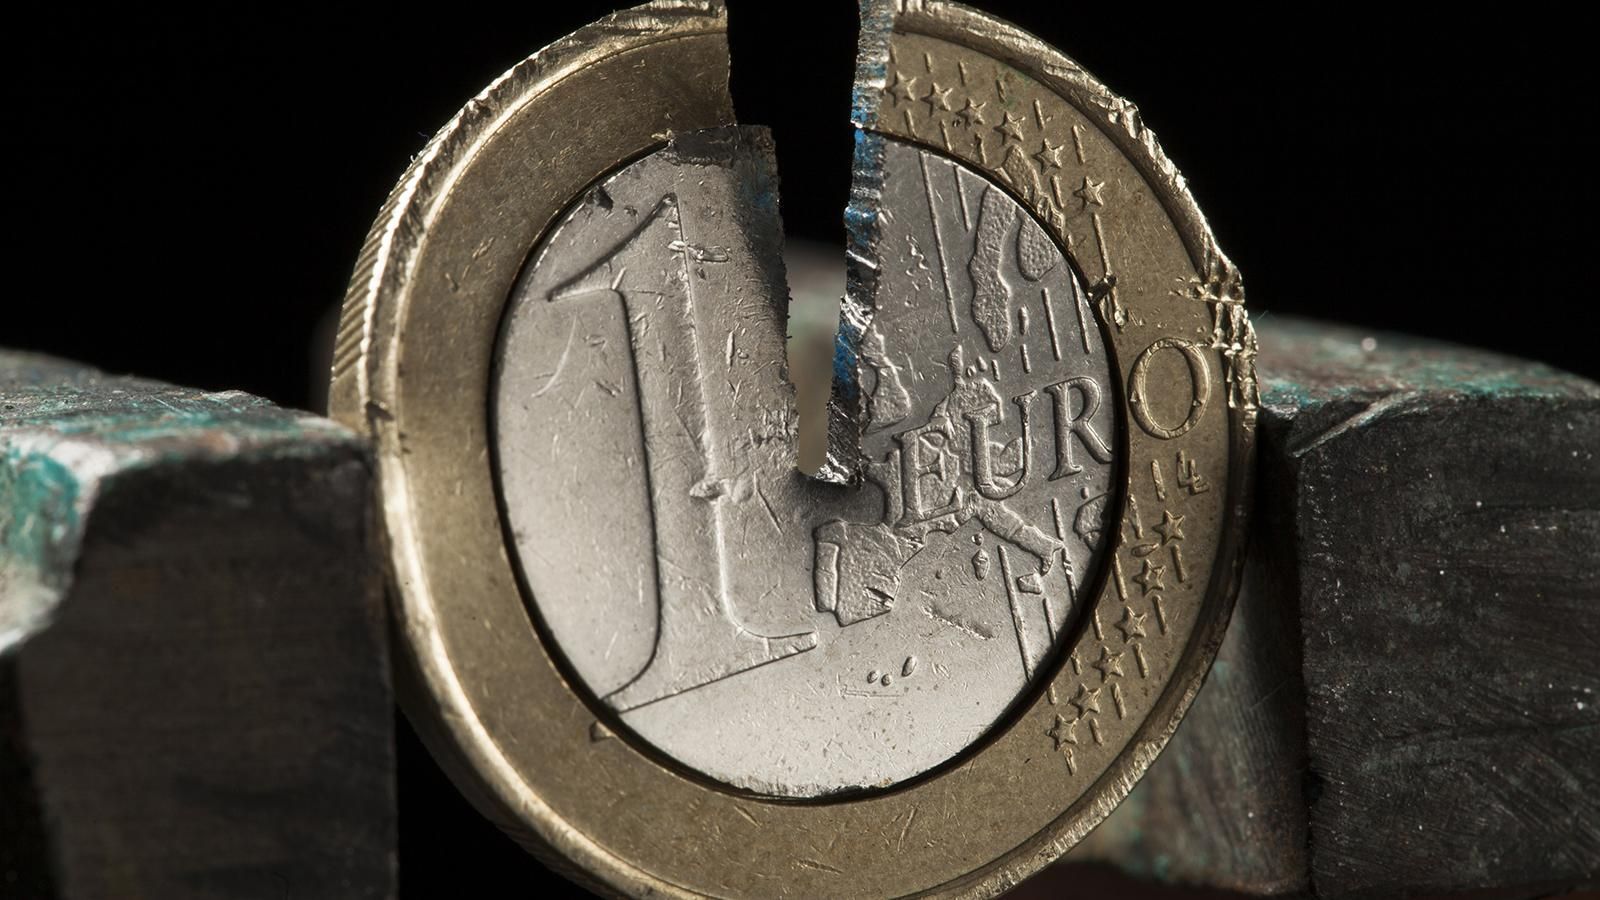 Наличный курс валют 11 мая: евро дешевеет, доллар удерживает позиции